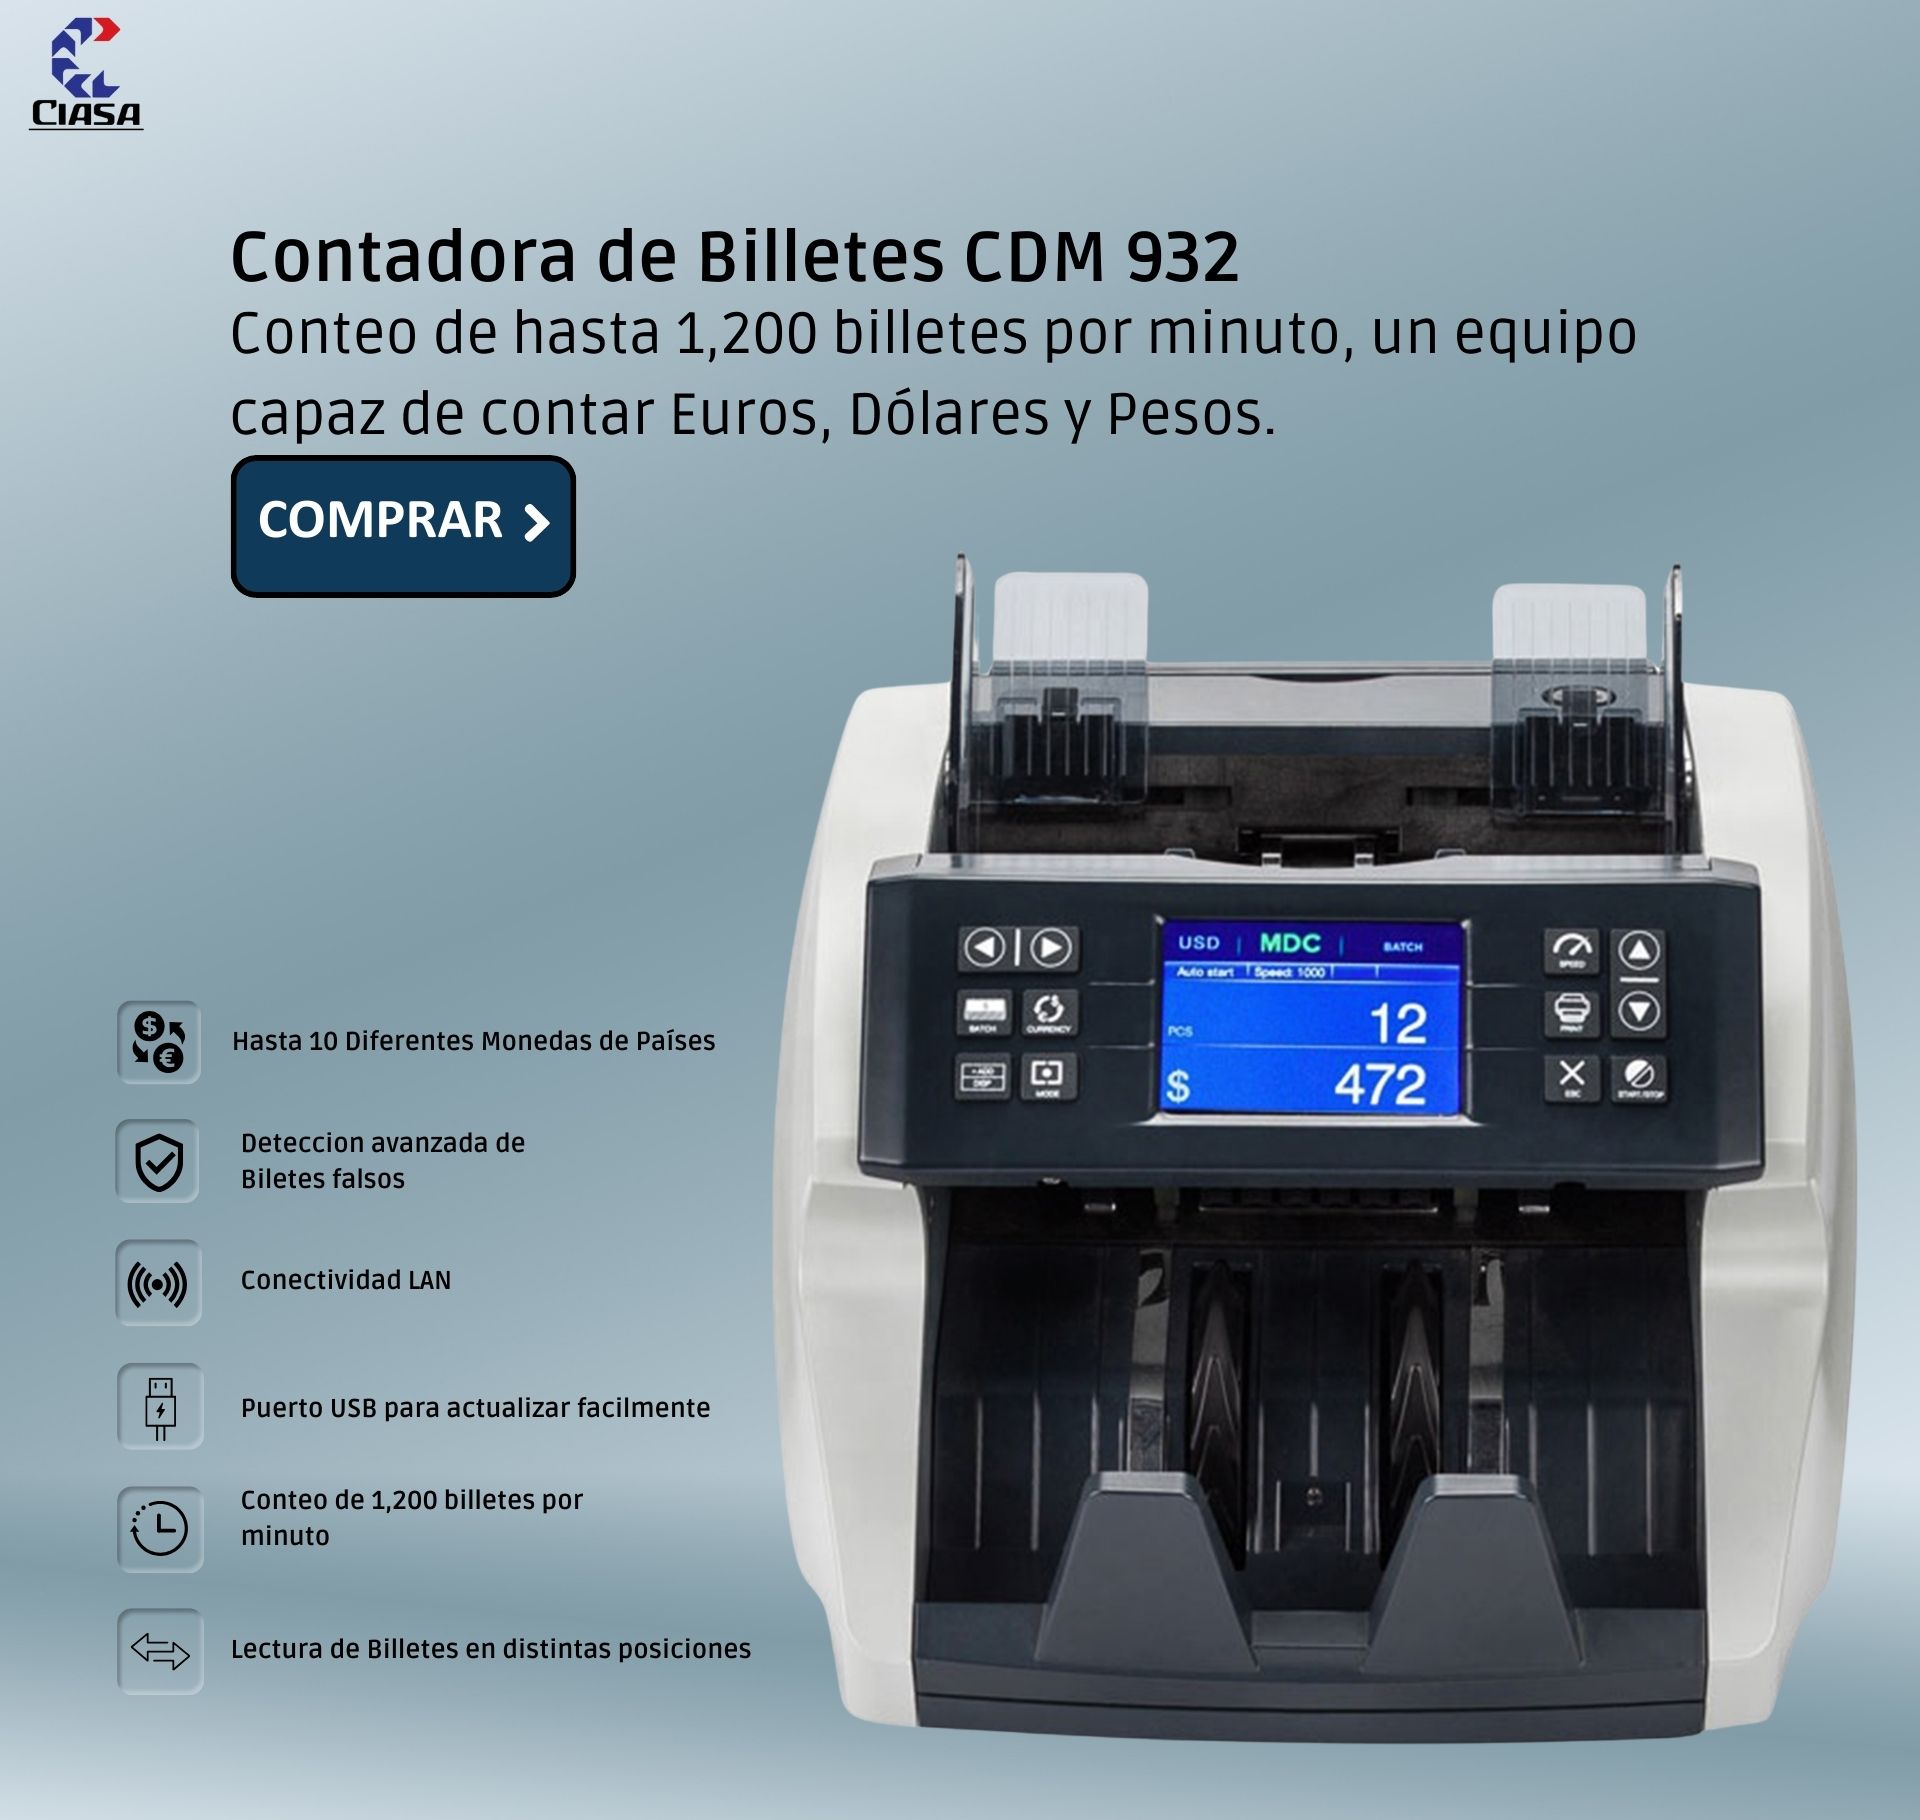 Detector de Billetes Falsos / Modelo LD40 CIASA MEXICO LD40